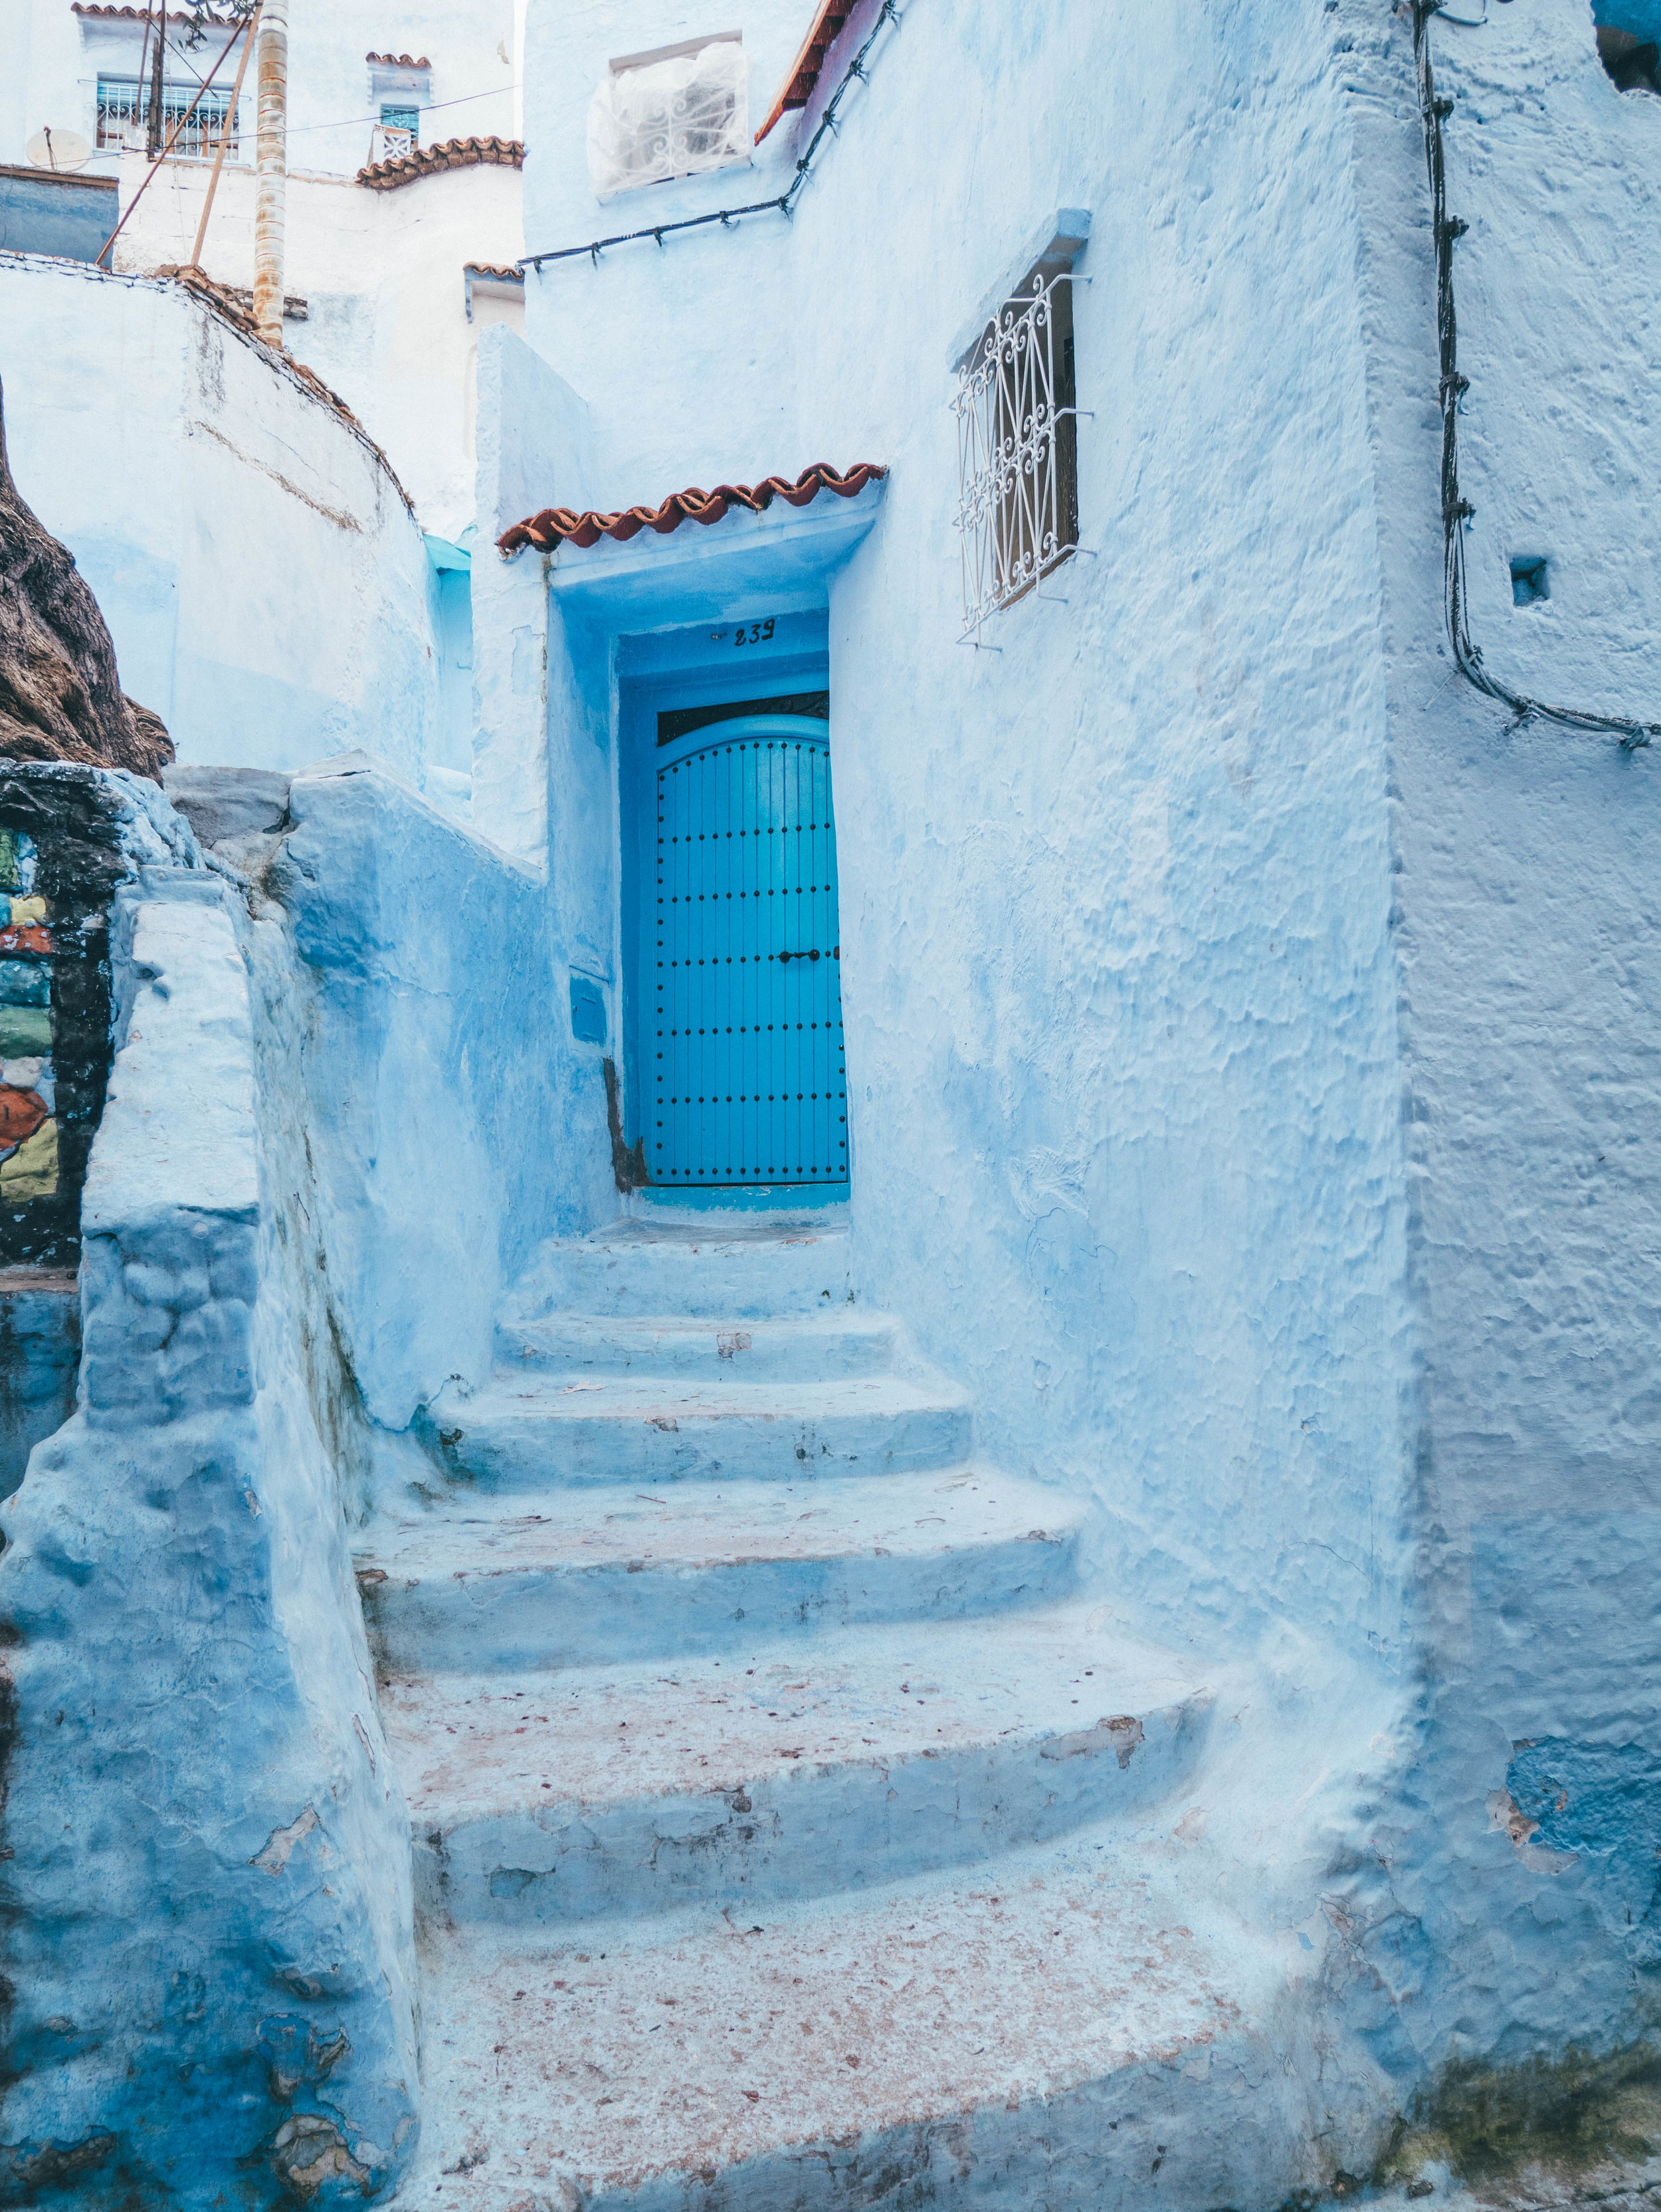 Hidden Blue Staircase - Chefchaouen - Morocco